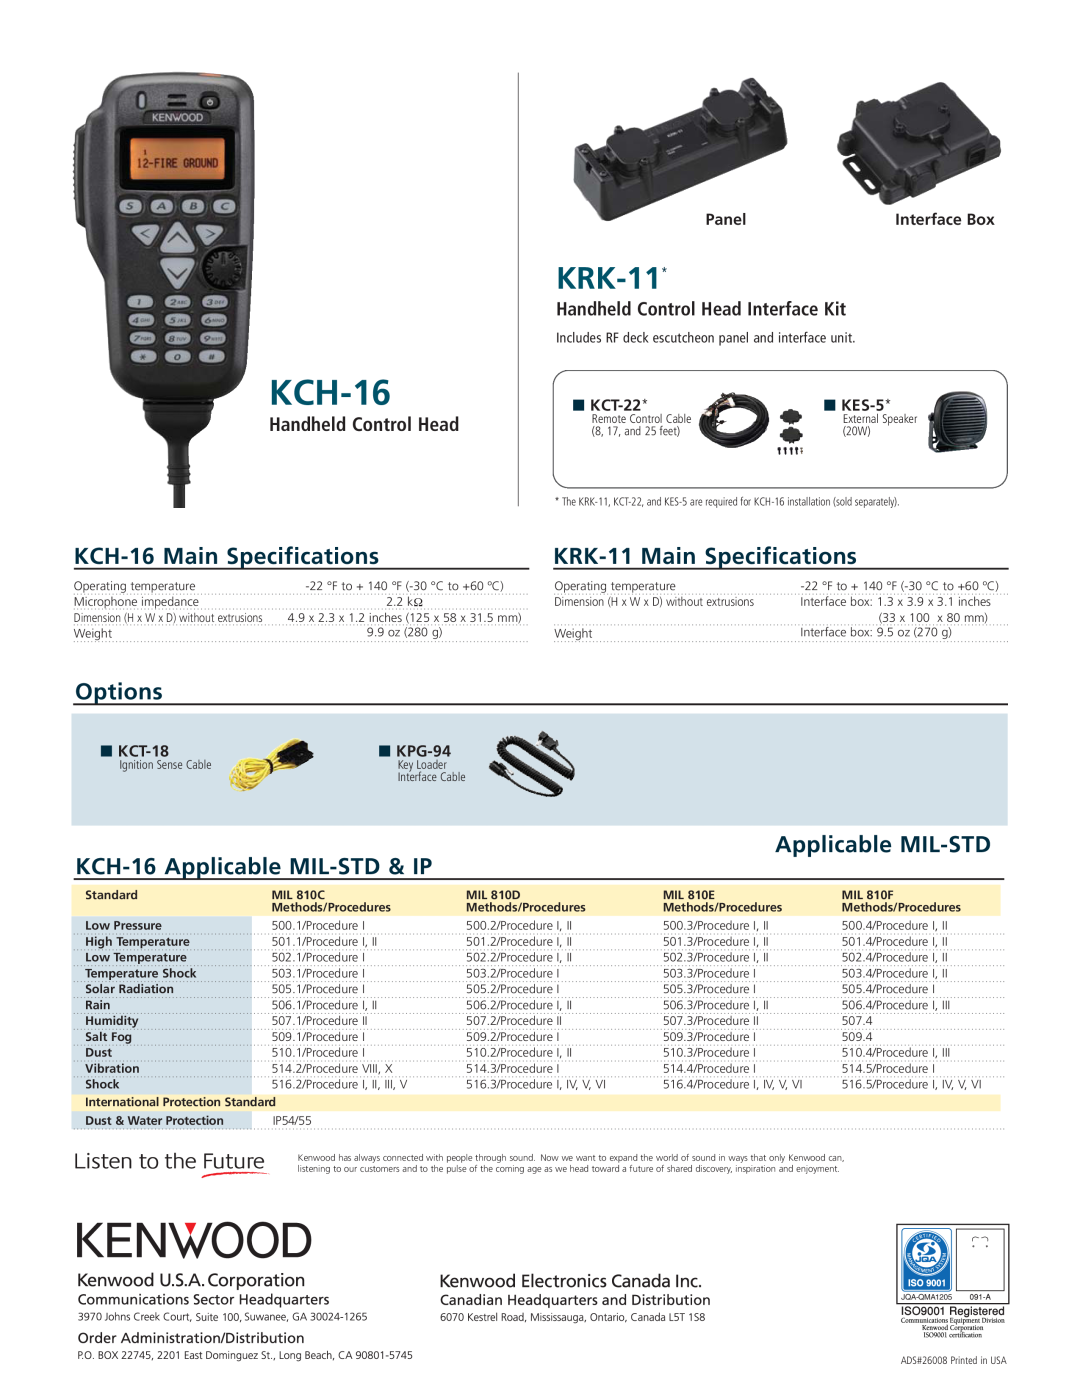 Kenwood KCT-22, TK-5710 KCH-16 Main Specifications, KRK-11 Main Specifications, Options, Handheld Control Head 